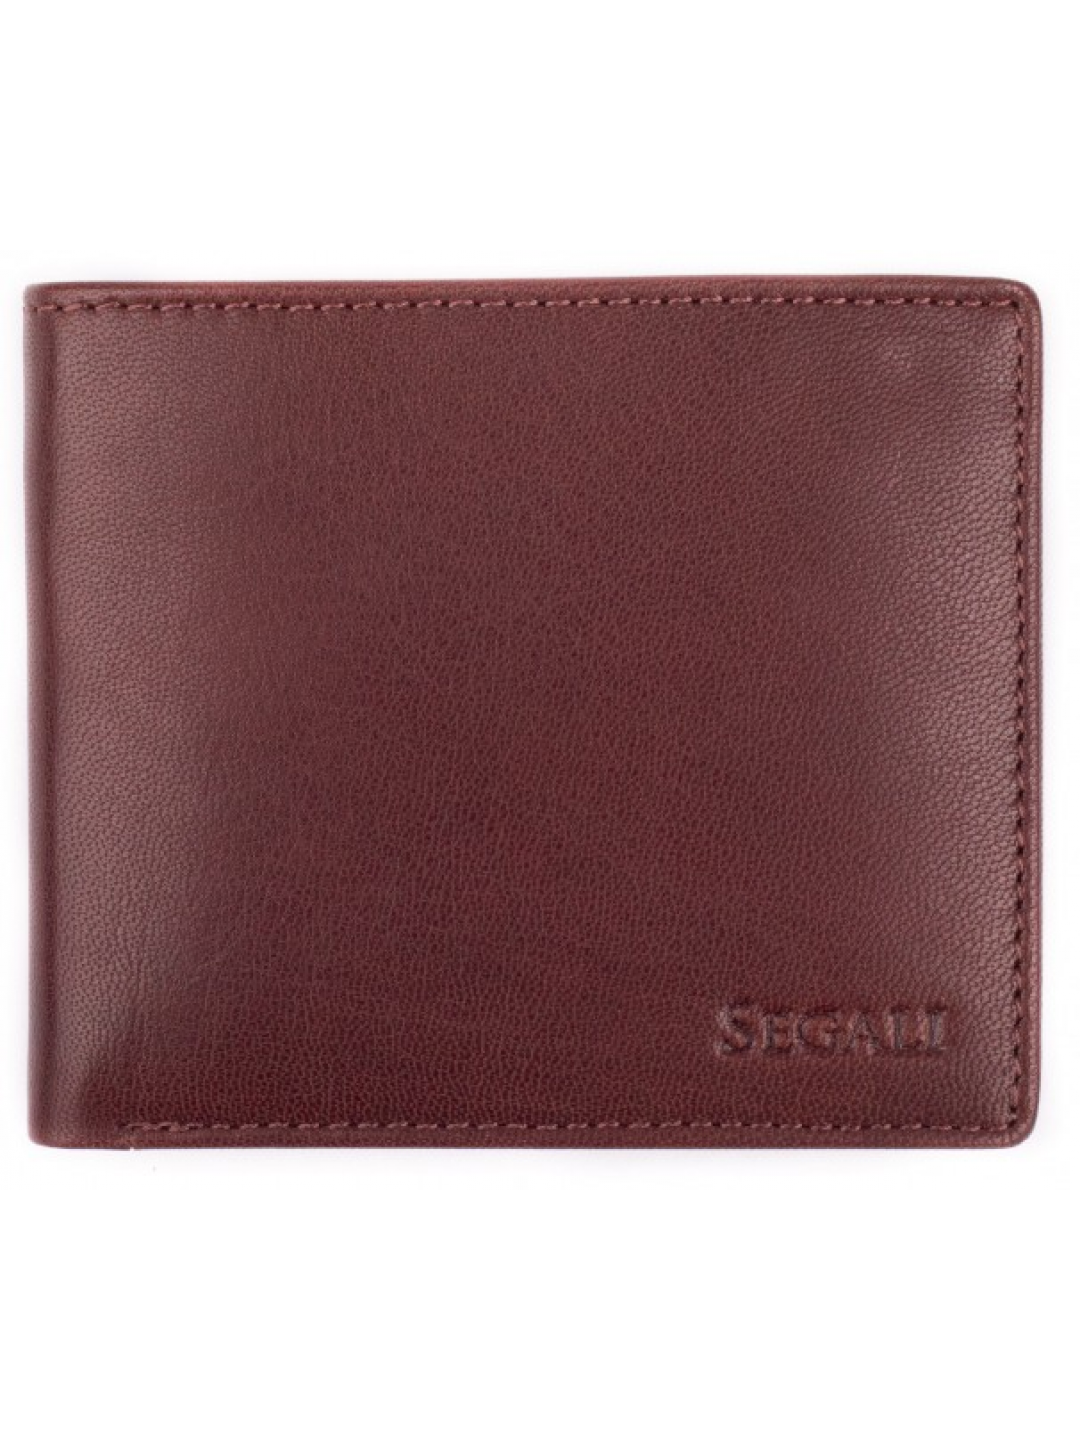 SEGALI Pánská kožená peněženka 7479 brown